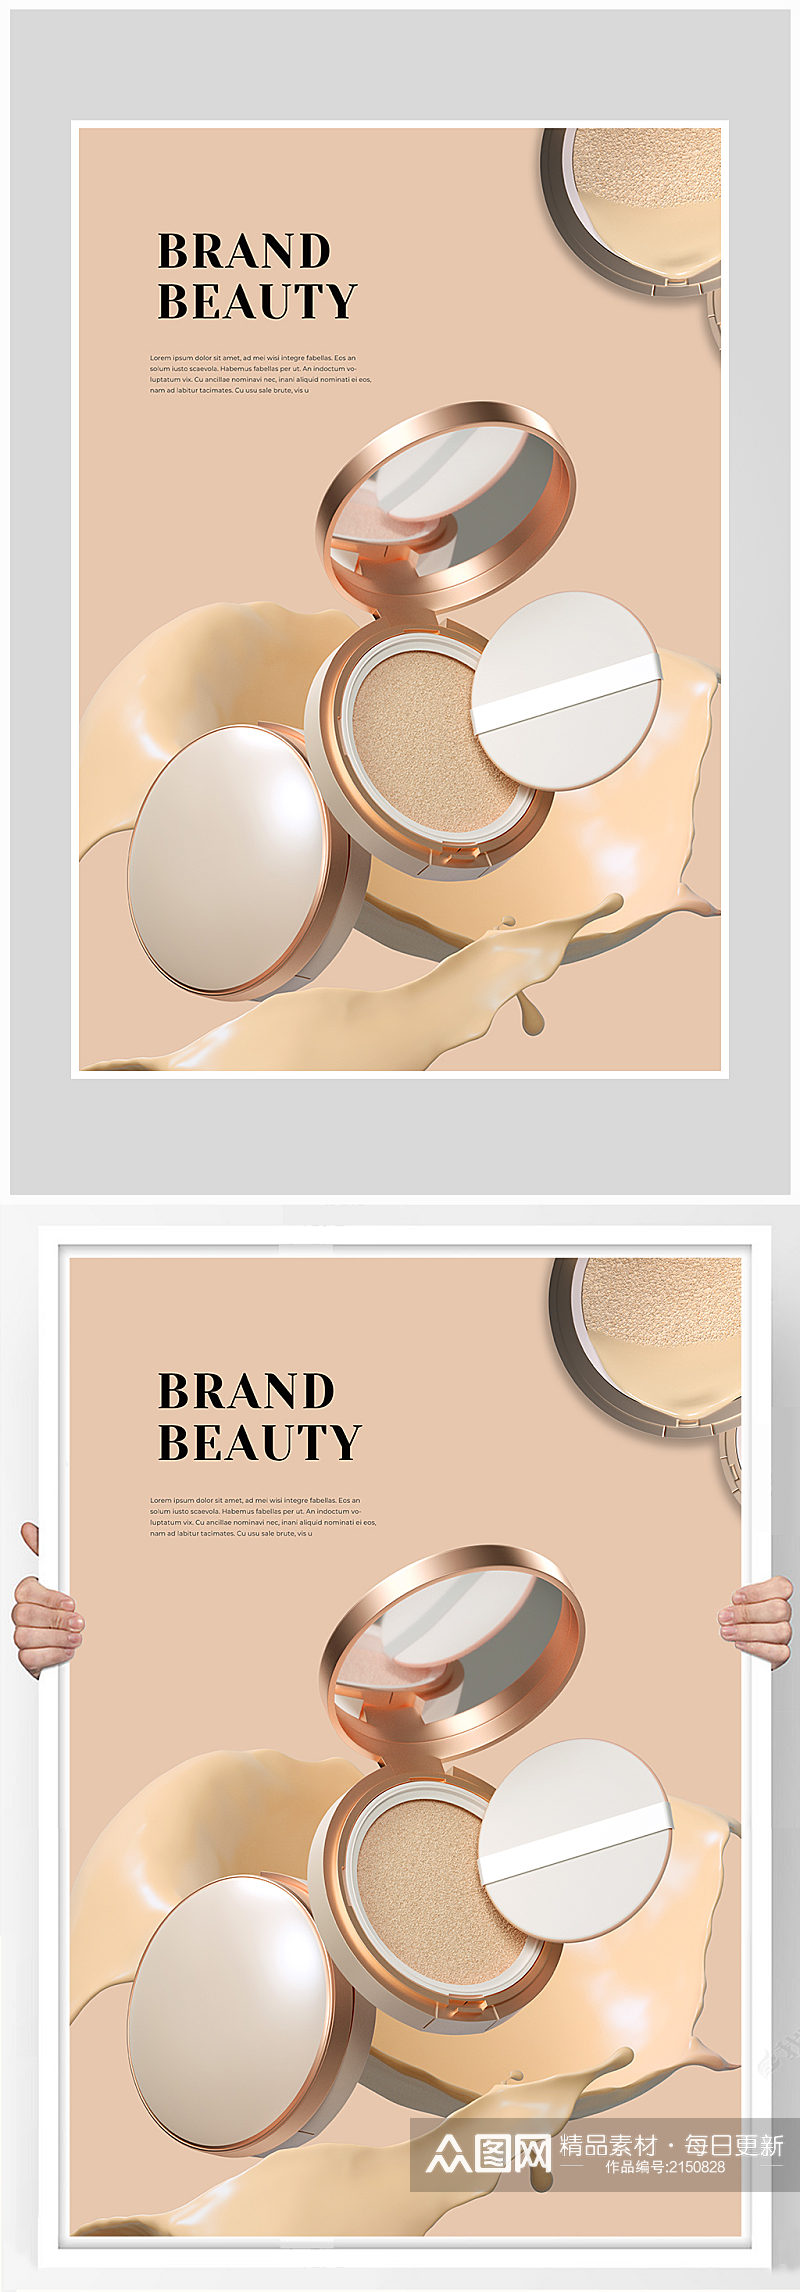 创意质感简约化妆品补妆海报设计素材